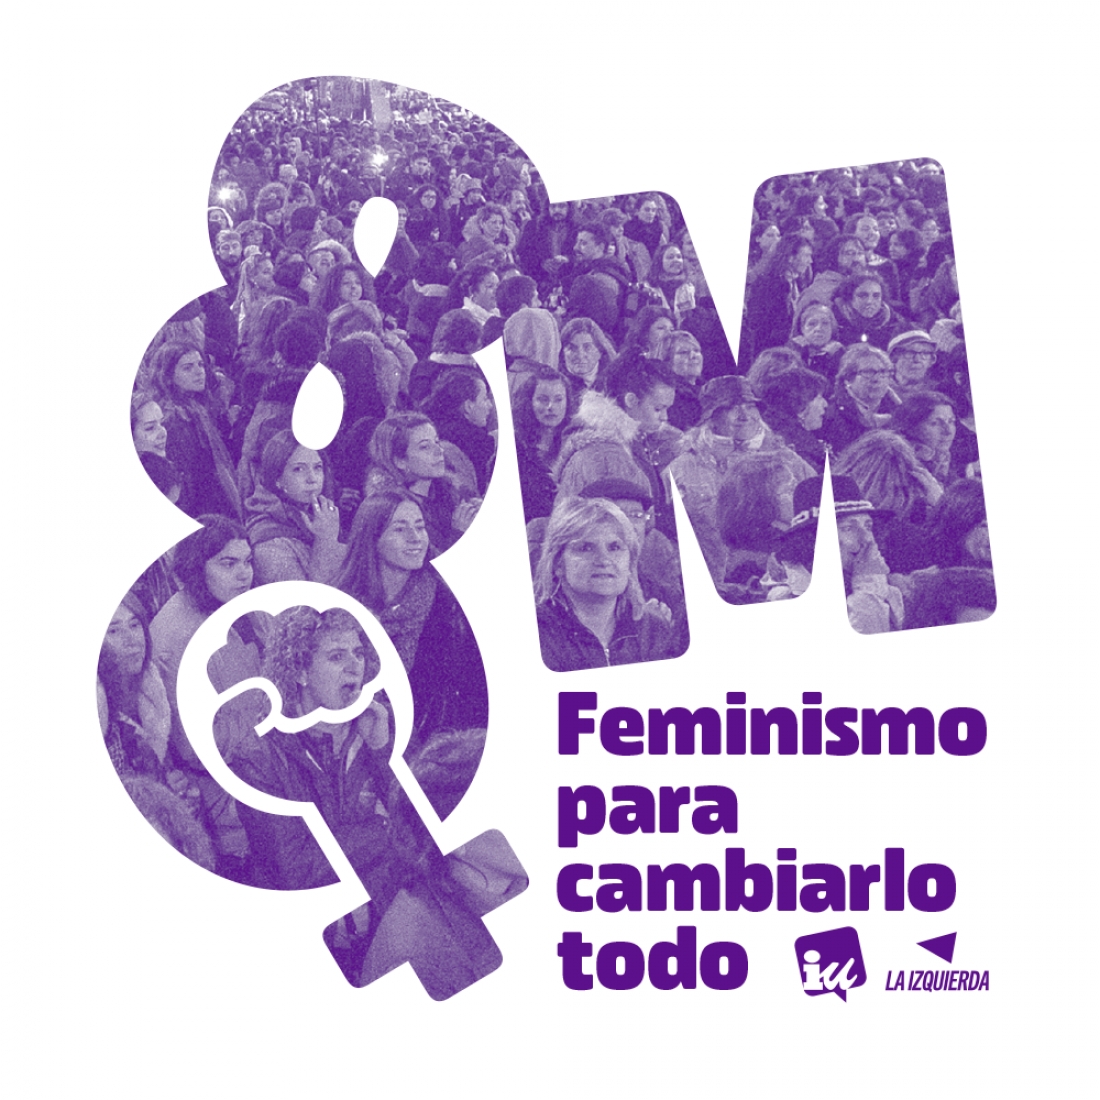 “Feminismo para cambiarlo todo”